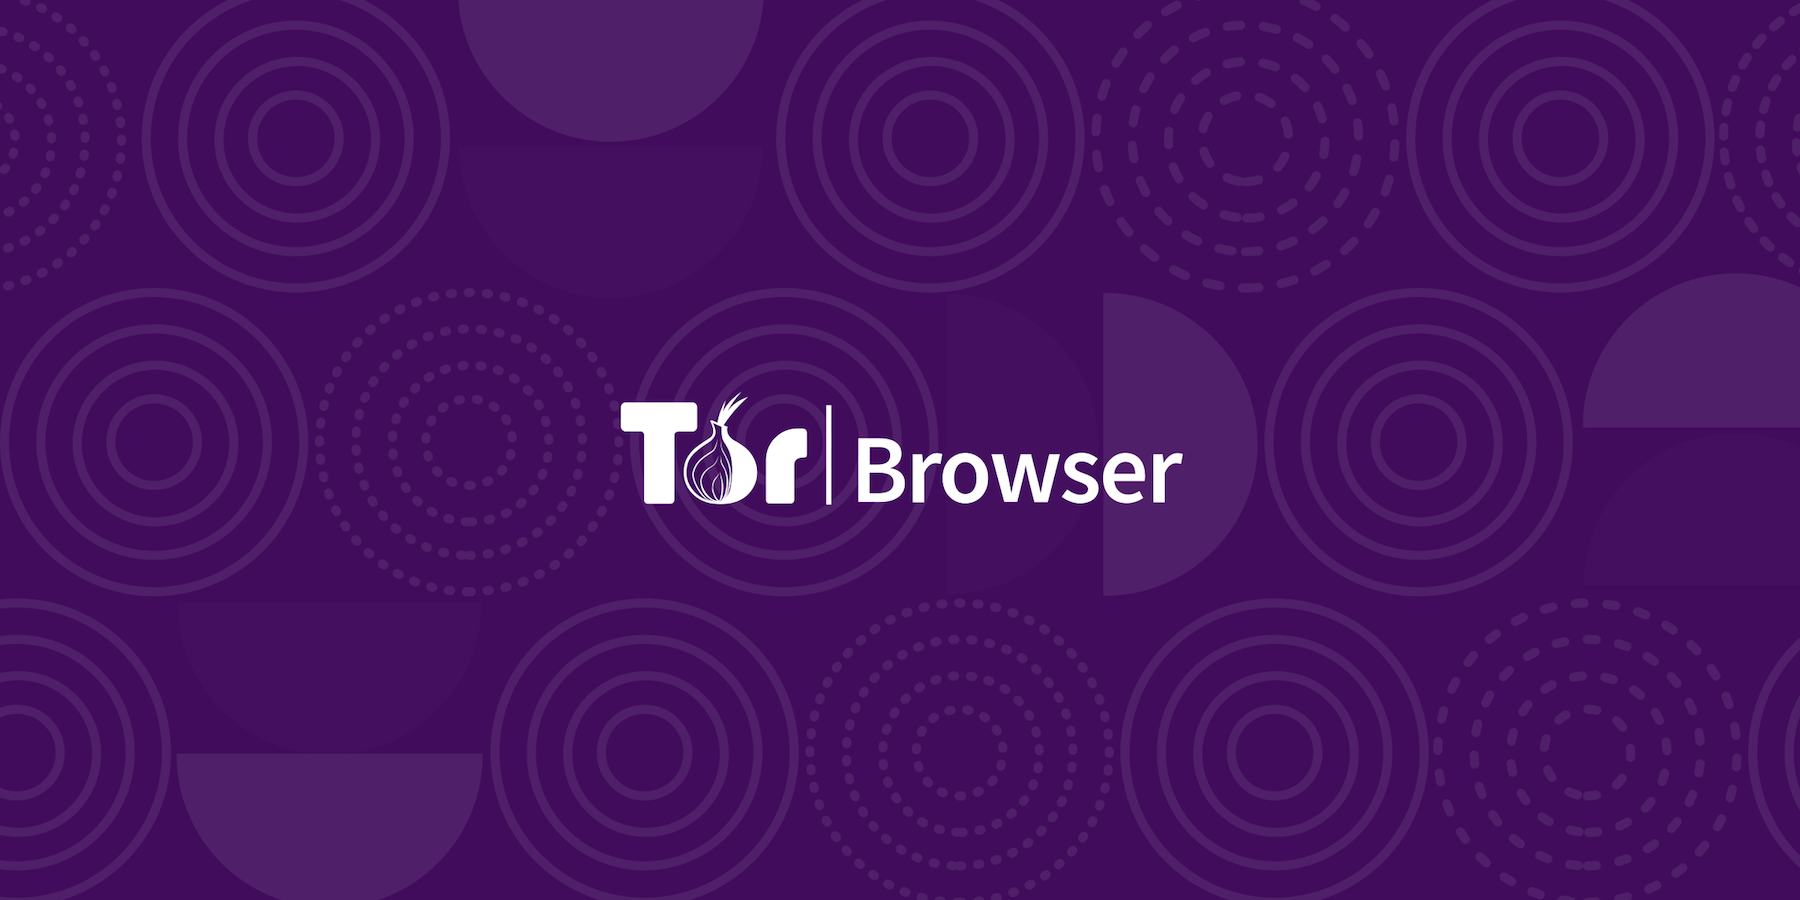 Firefox tor browser android mega вход как скачать tor browser и установить mega2web